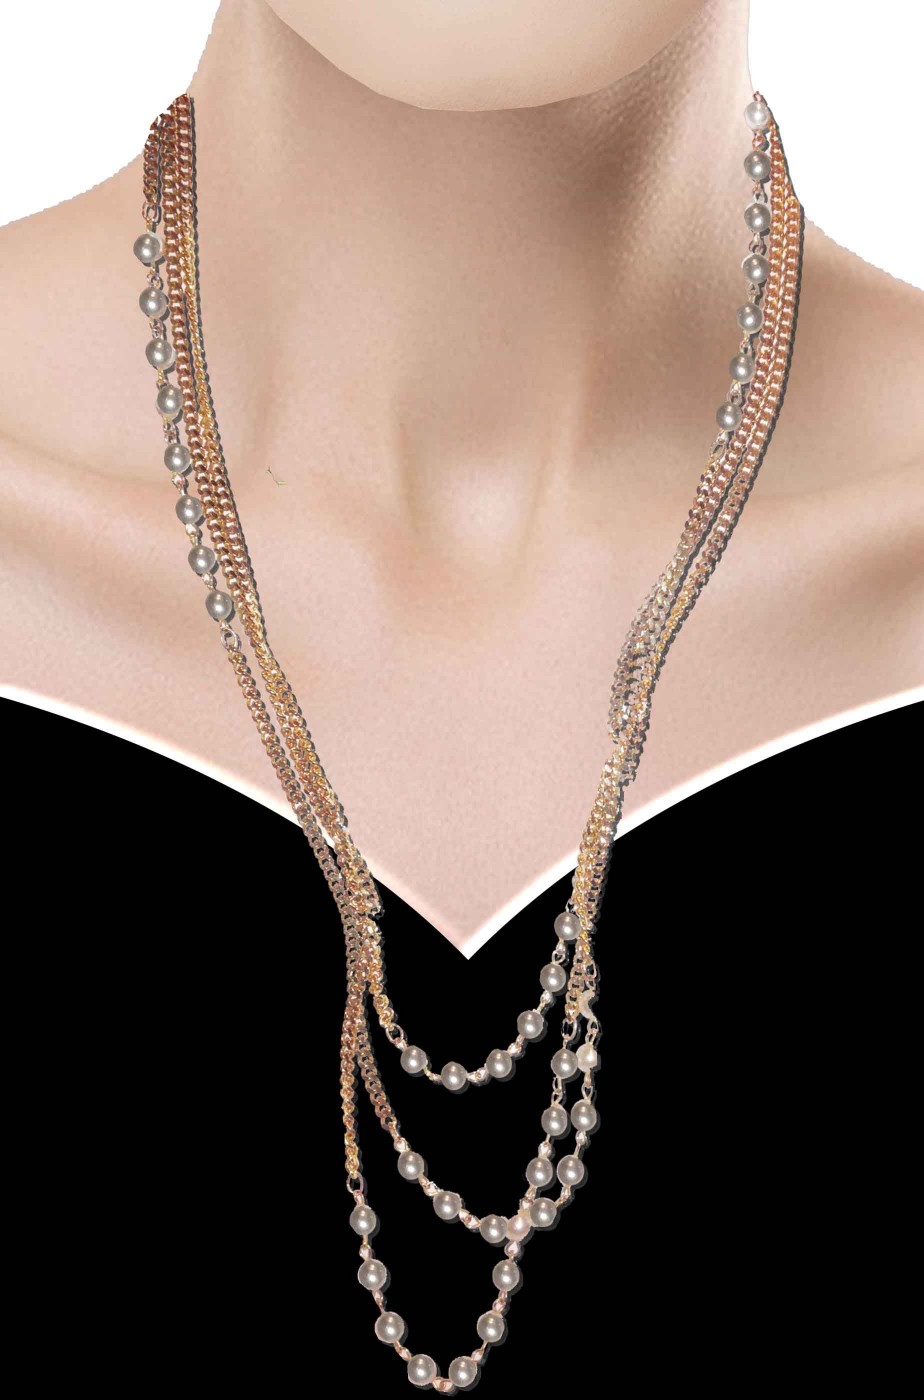 Collana color oro filo di perle finte in stile anni 30 o 40